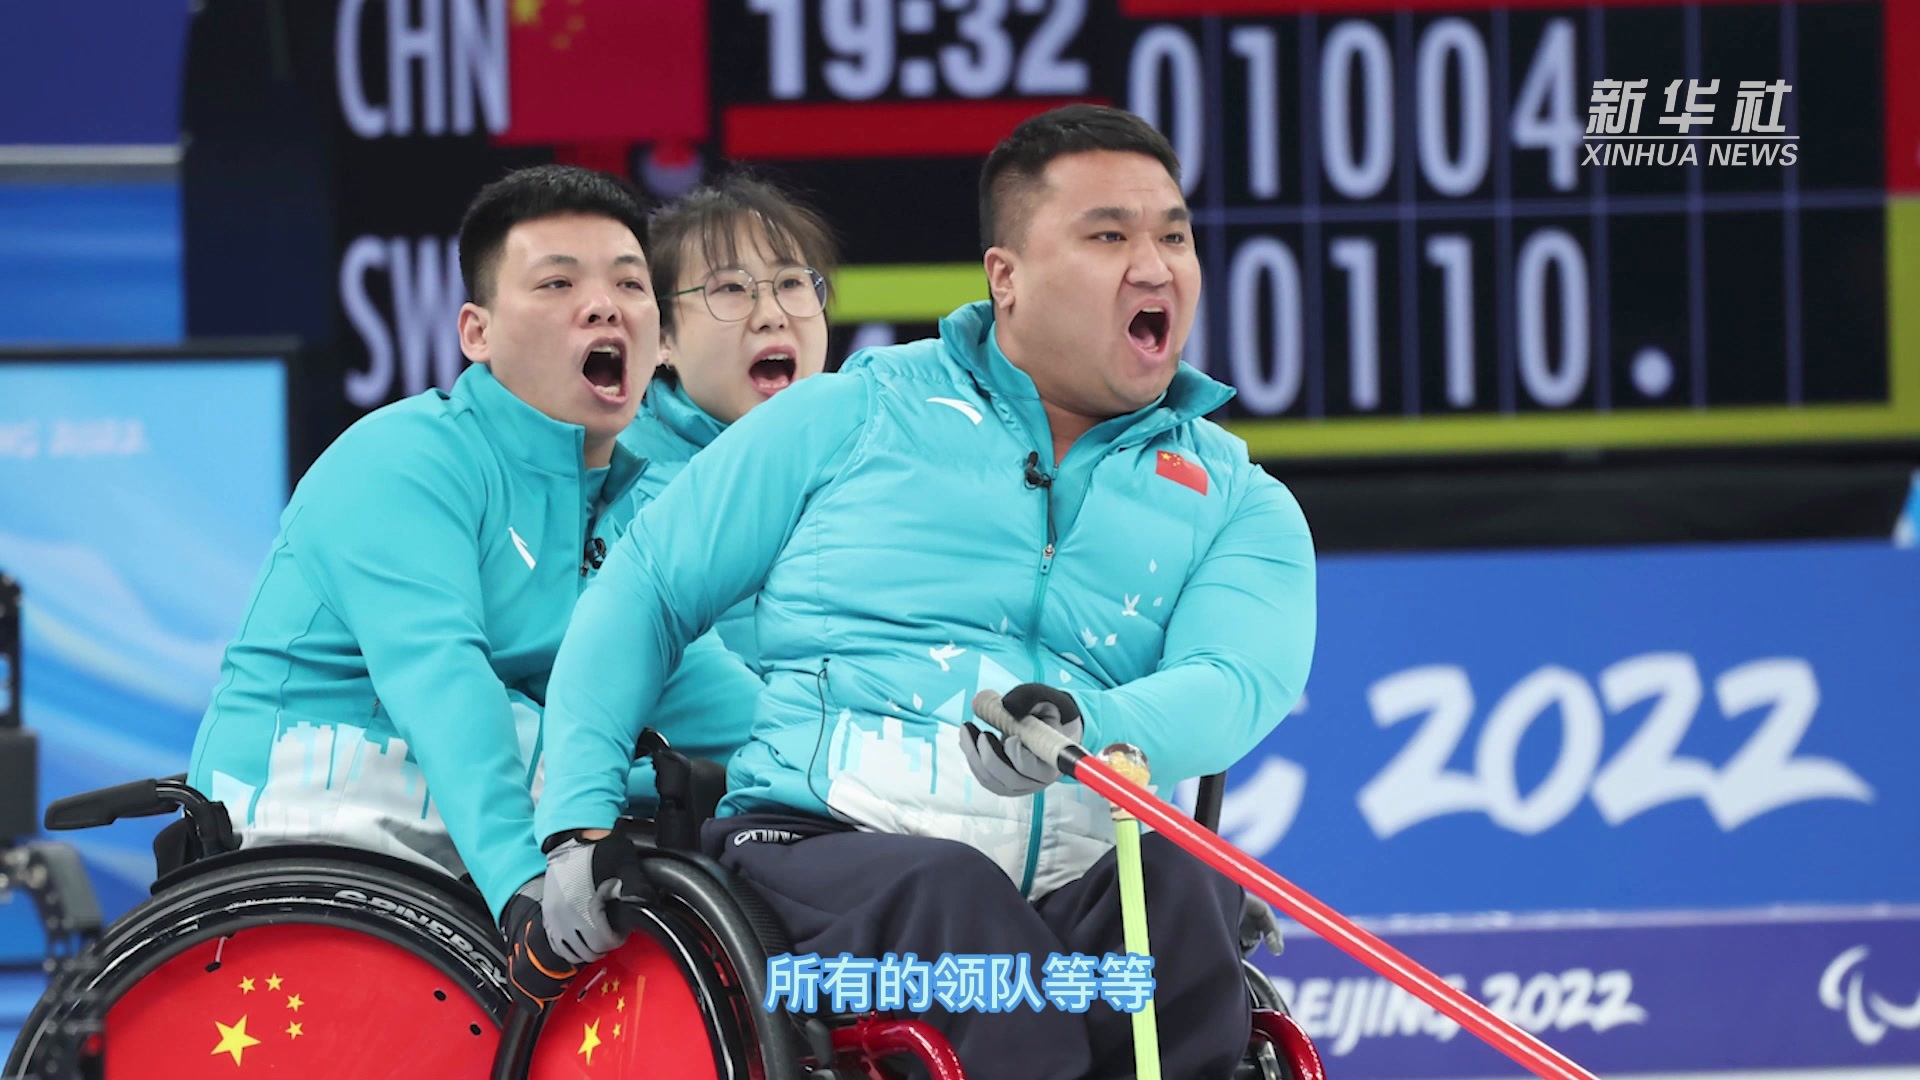 新华全媒+|中国轮椅冰壶队队员闫卓：夺冠心情很激动！冰壶运动很“智慧”！大家多来玩冰壶